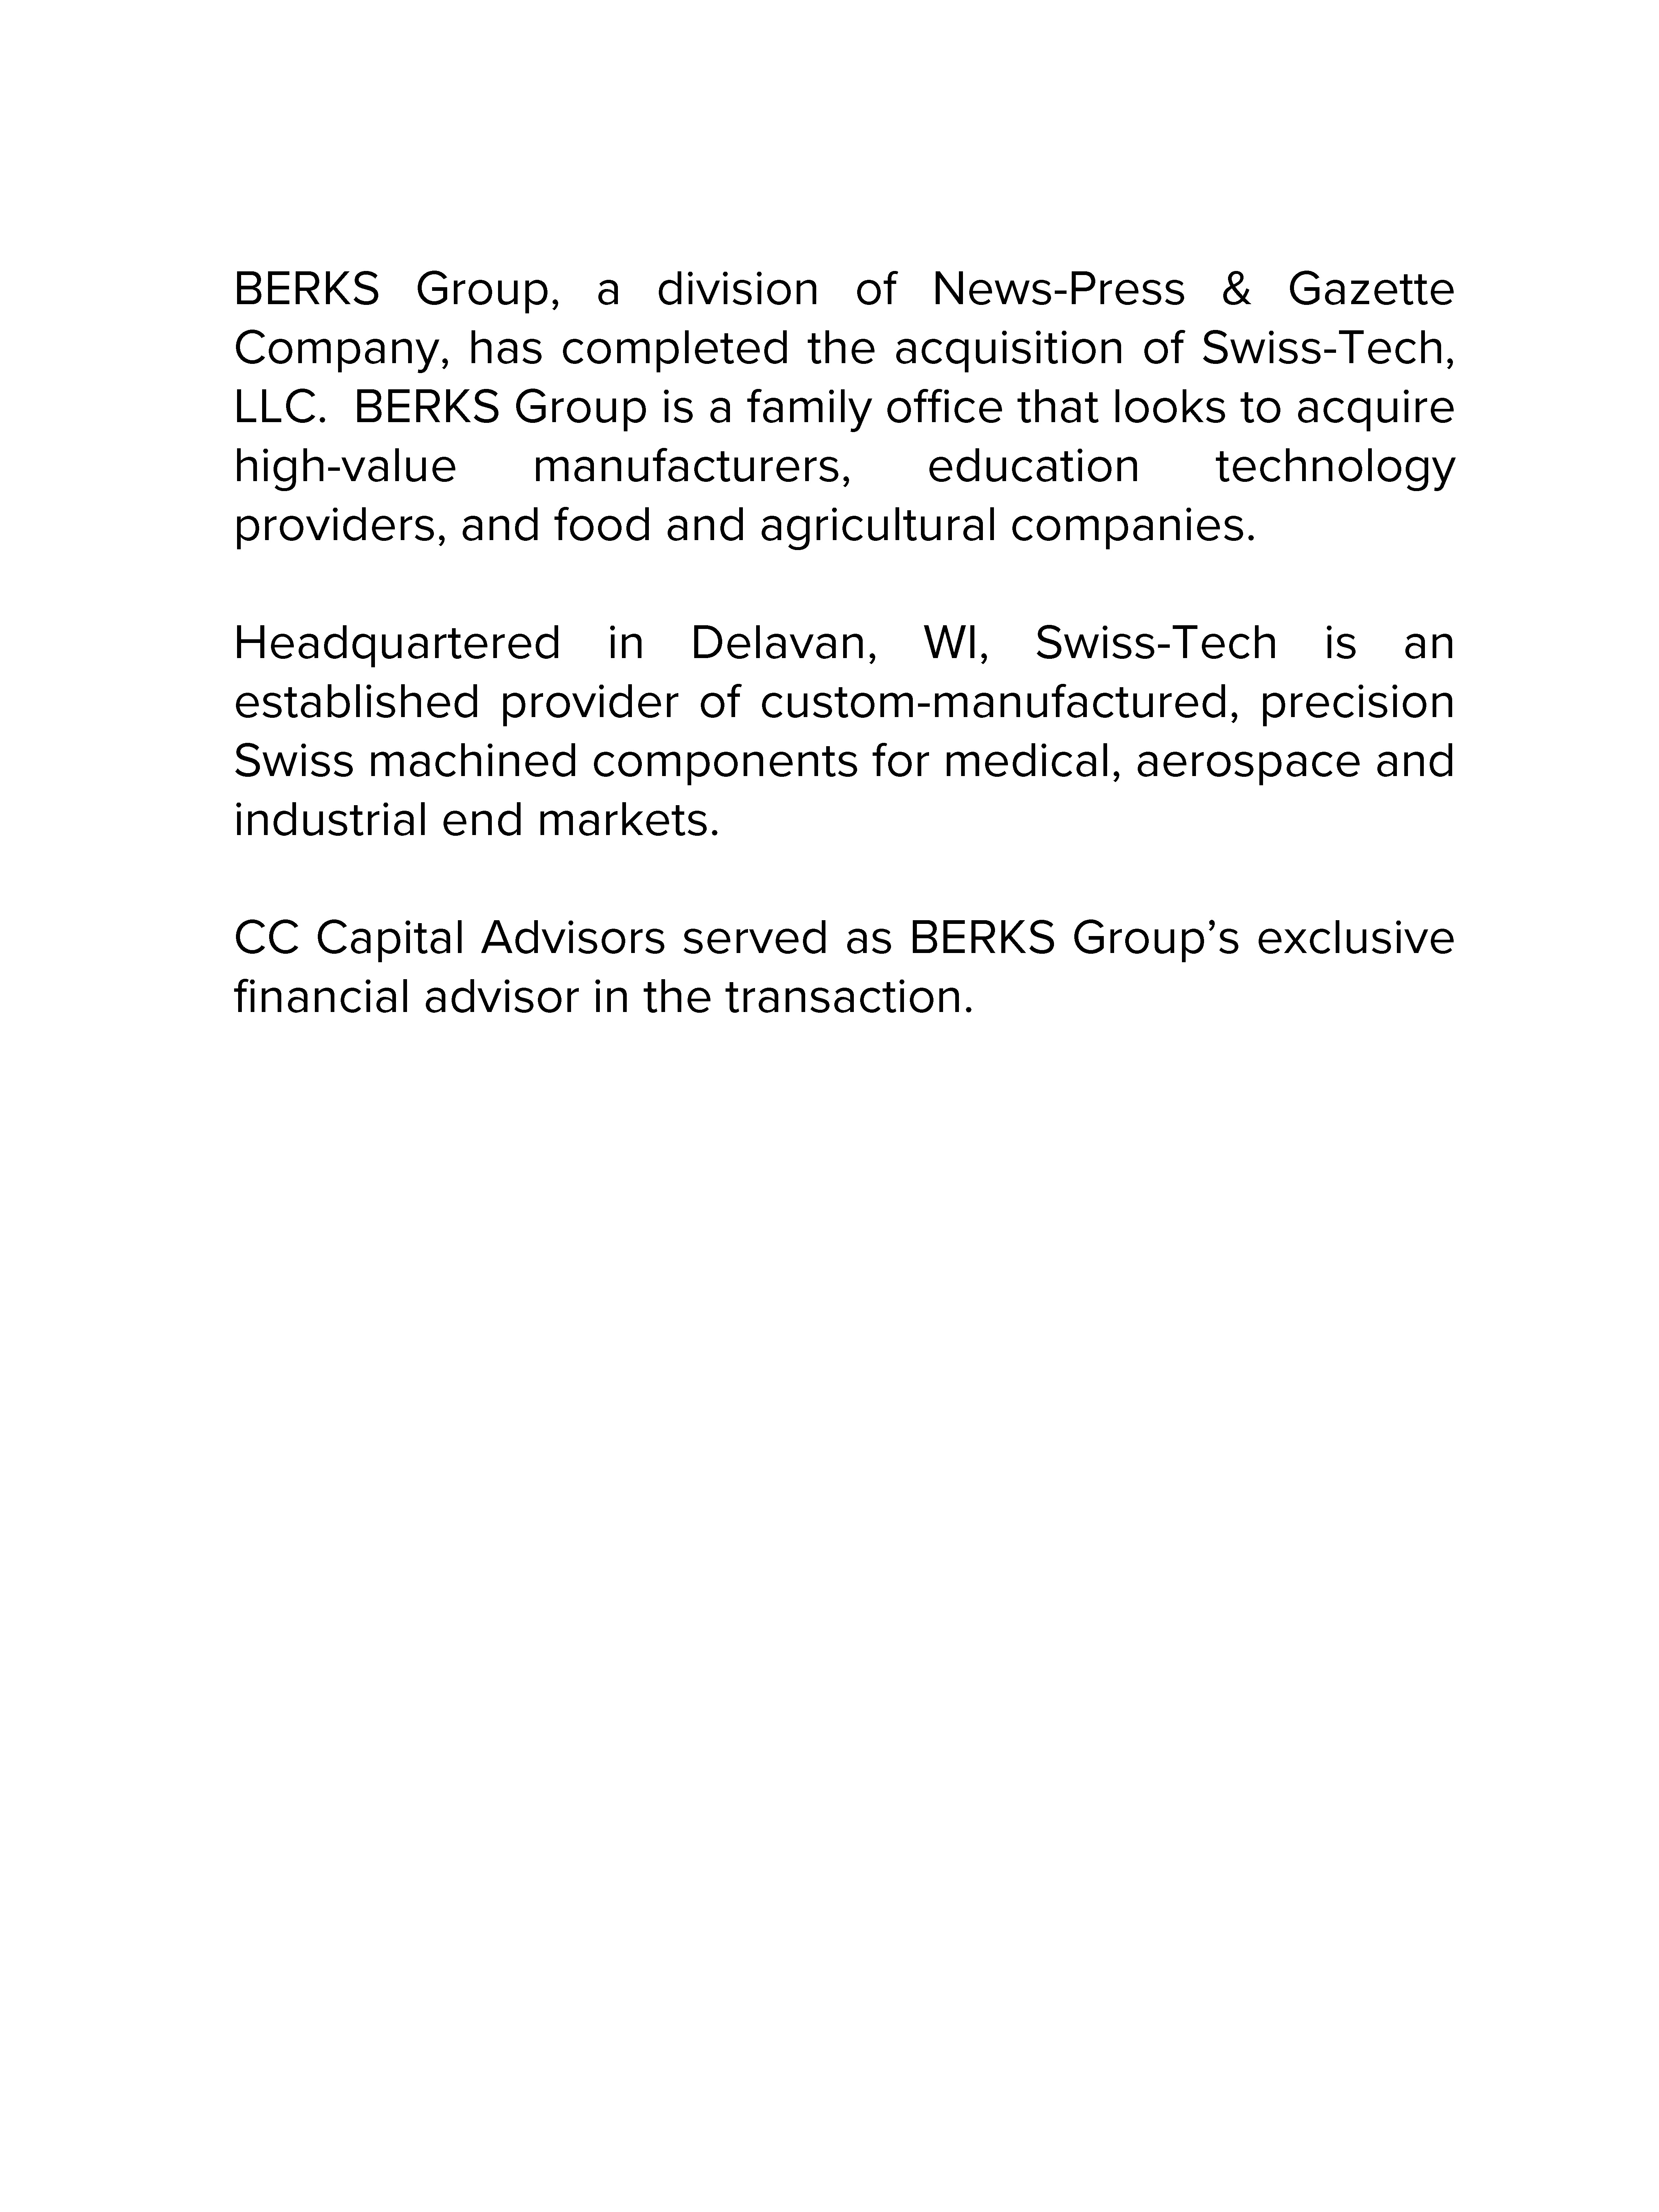 Berks Group transaction